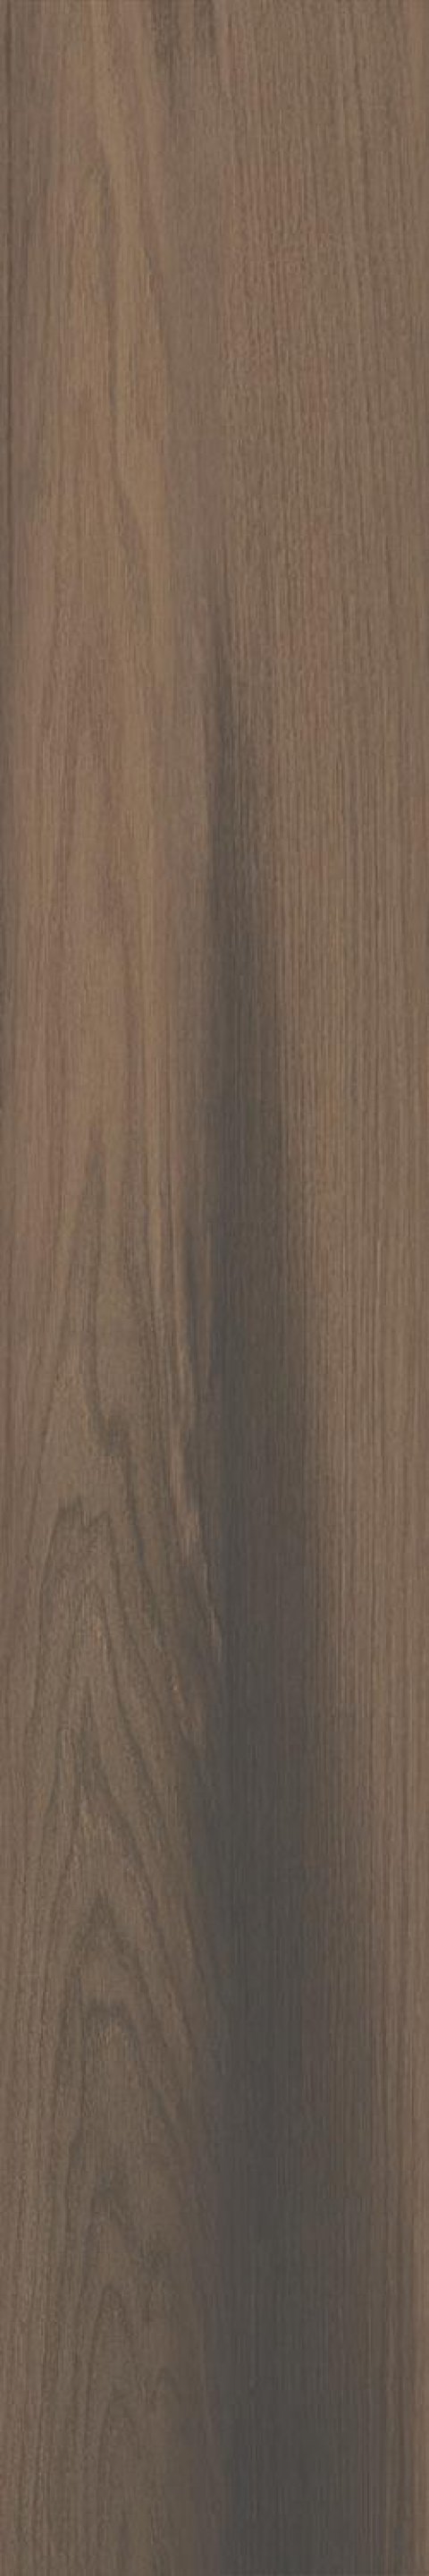 Керамический гранит Фоссил Вуд коричневый тёмный обрезной SG040200R (KERAMA MARAZZI)